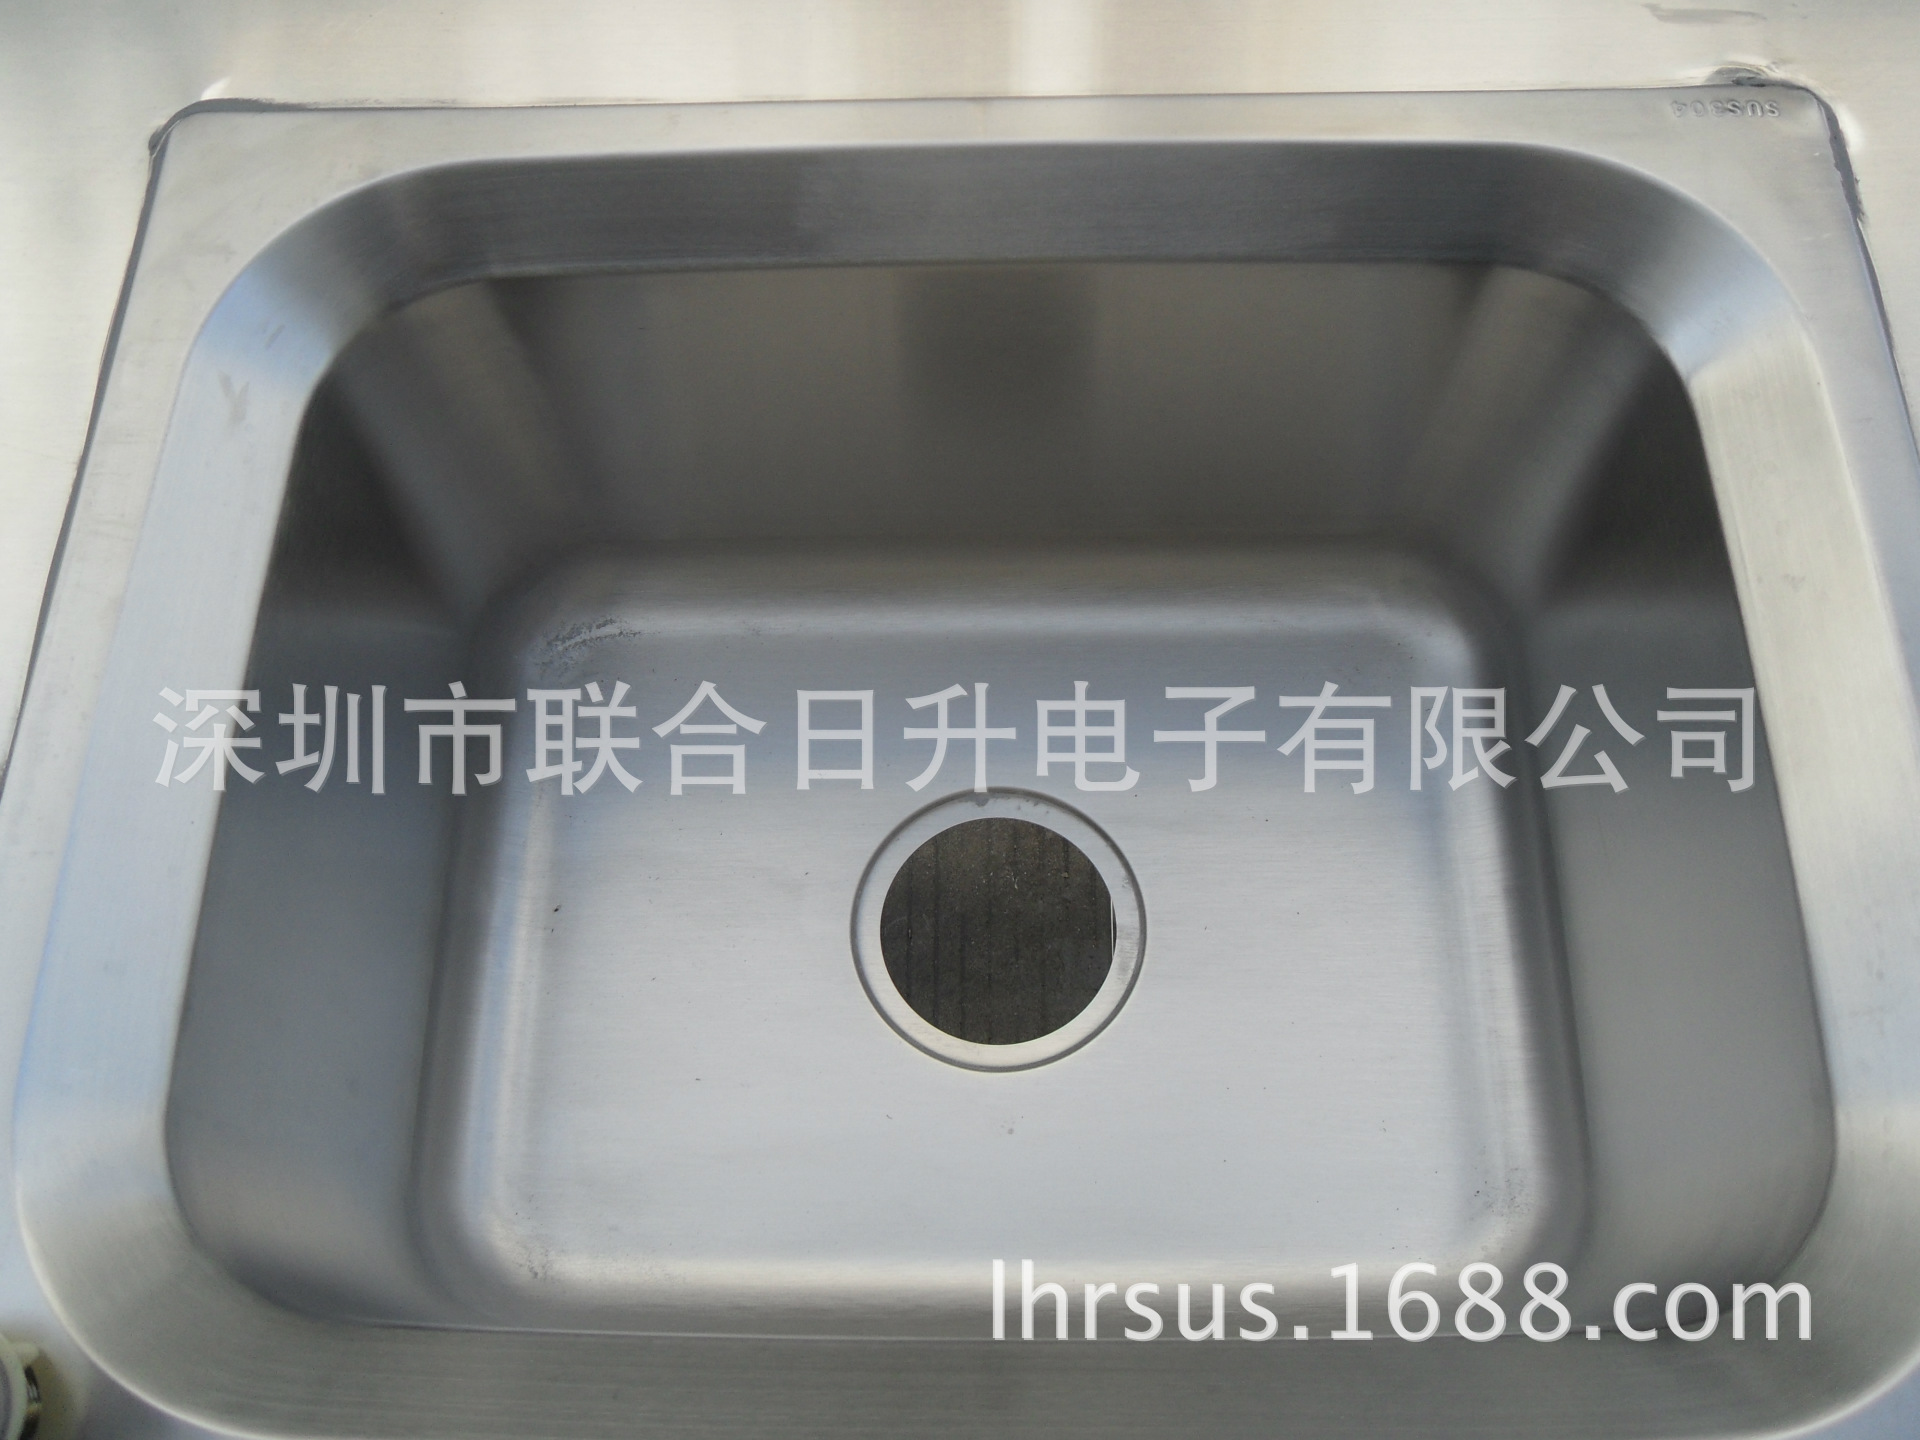 供应非标定制不锈钢单星水槽工作台厨房卫生台操作台清洗台洗手池